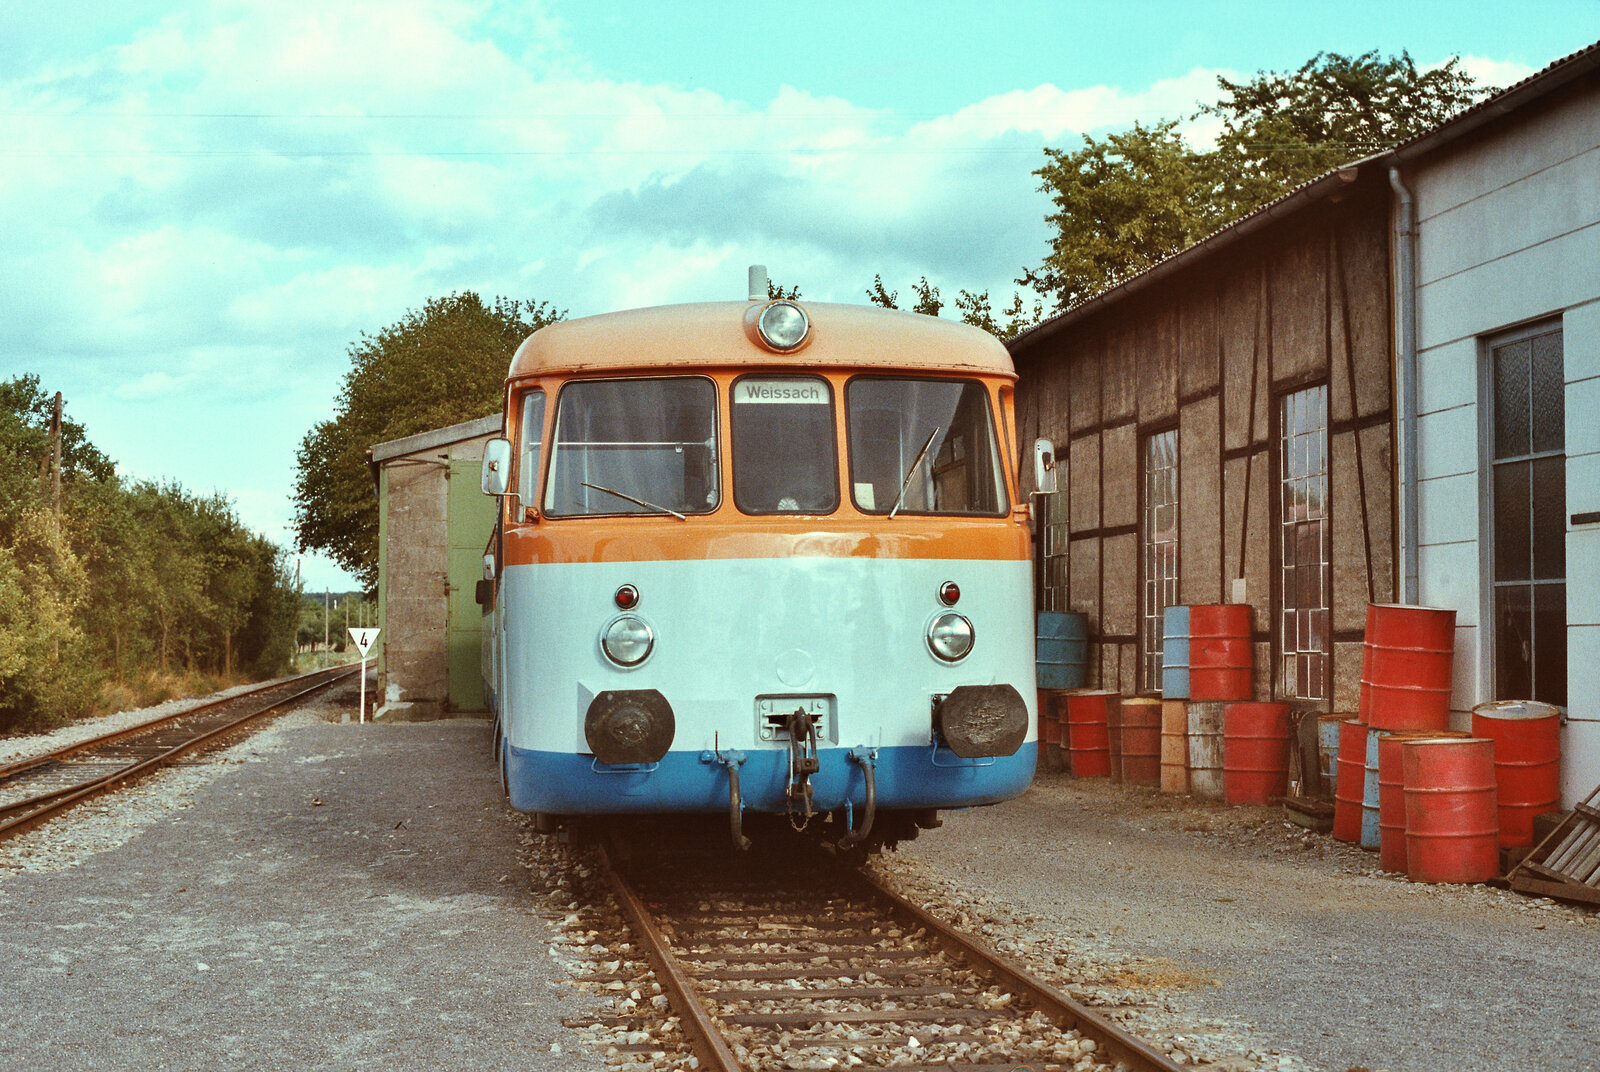 MAN-Schienenbusse der Strohgäubahn Korntal-Weissach waren 1983 noch ziemlich gepflegt.
Ein solcher Schienenbus, der VS 113, war vor dem Depot Weissach abgestellt.